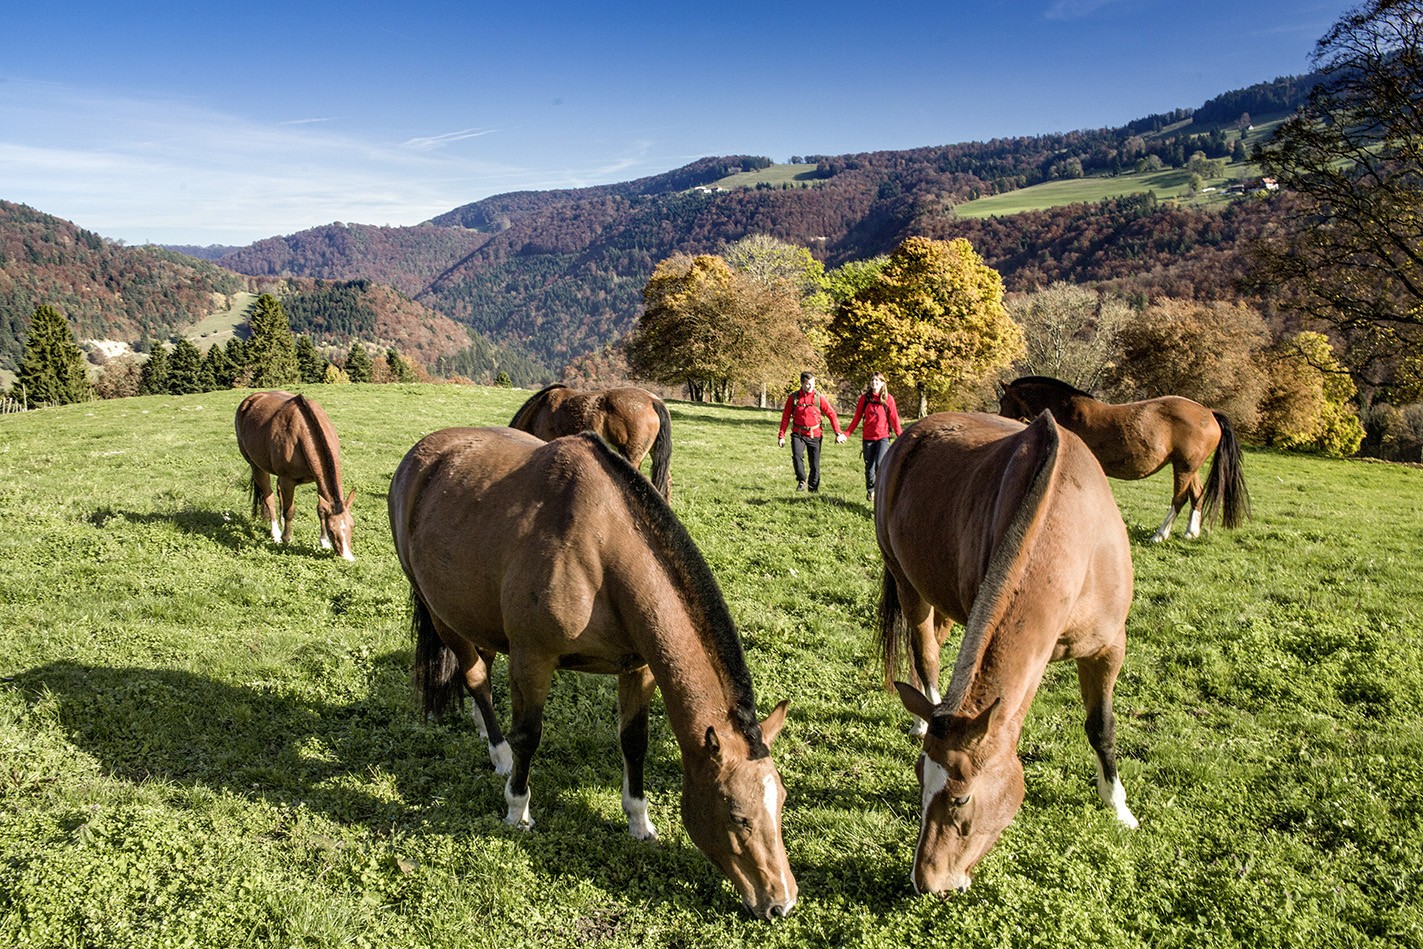 Pour les amoureux des chevaux, les Franches Montagnes sont incontournables. Photo: Christof Sonderegger